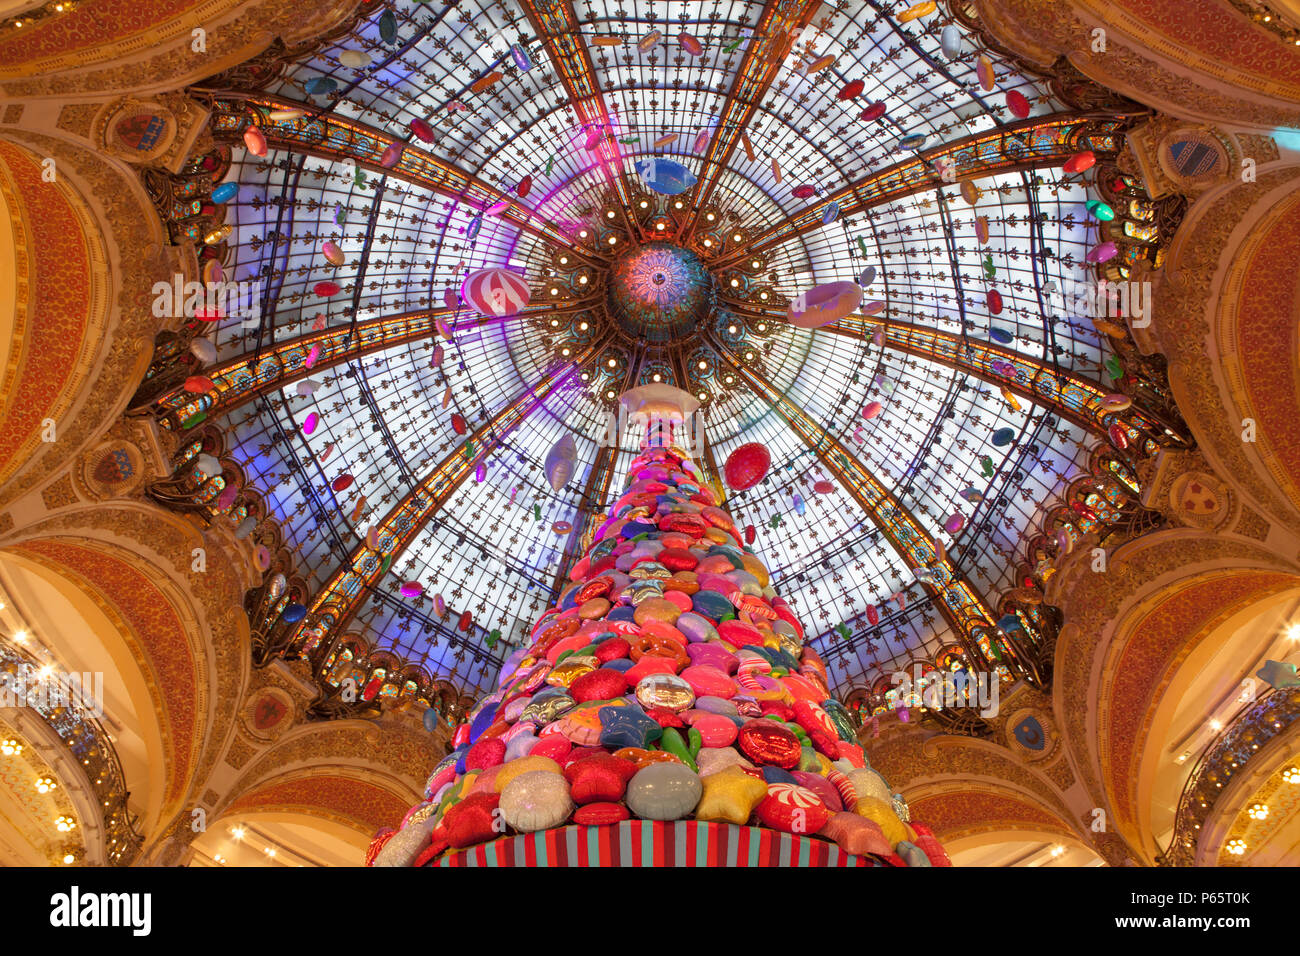 L'arbre de Noël et l'affichage dans les Galeries Lafayette, un grand magasin de Paris France avec une toiture en verre teinté Banque D'Images